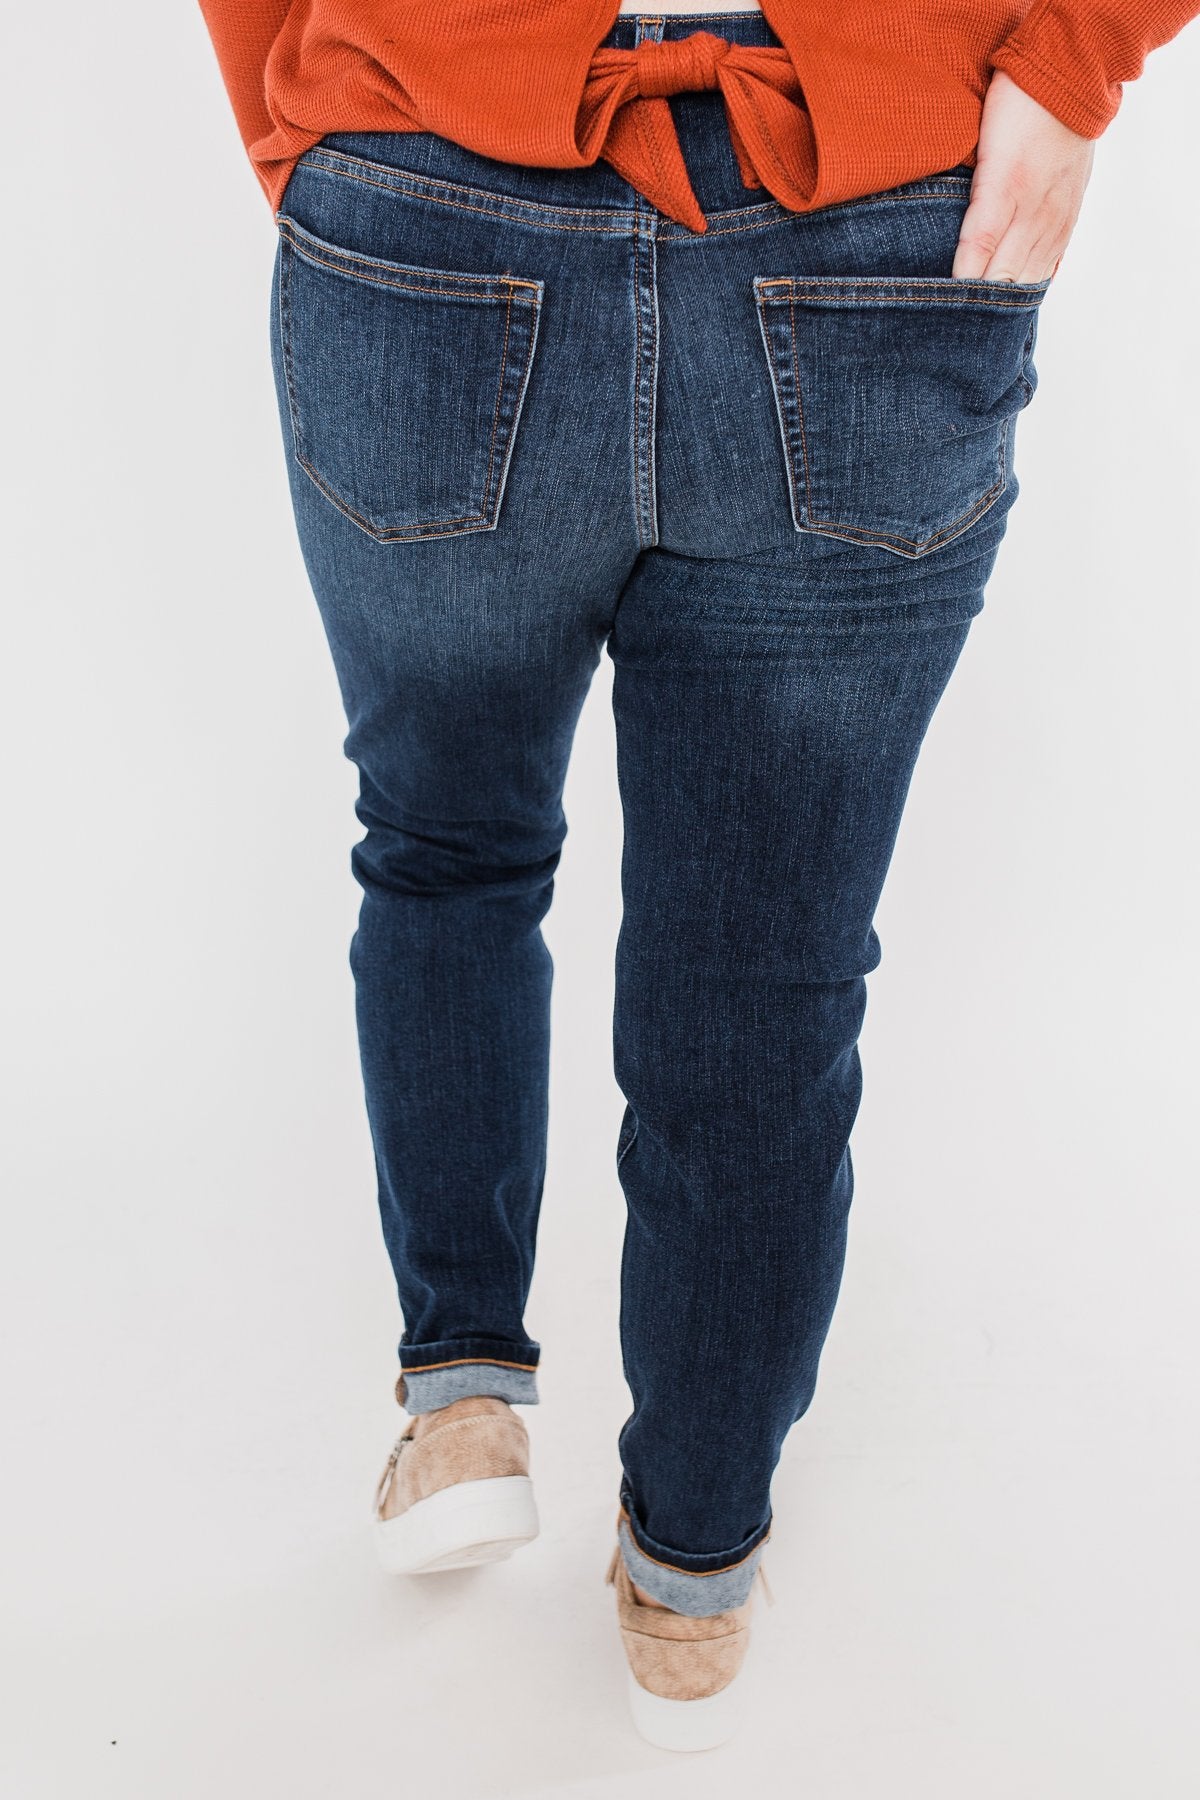 Sneak Peek Jeans- Becky Dark Wash – The Pulse Boutique